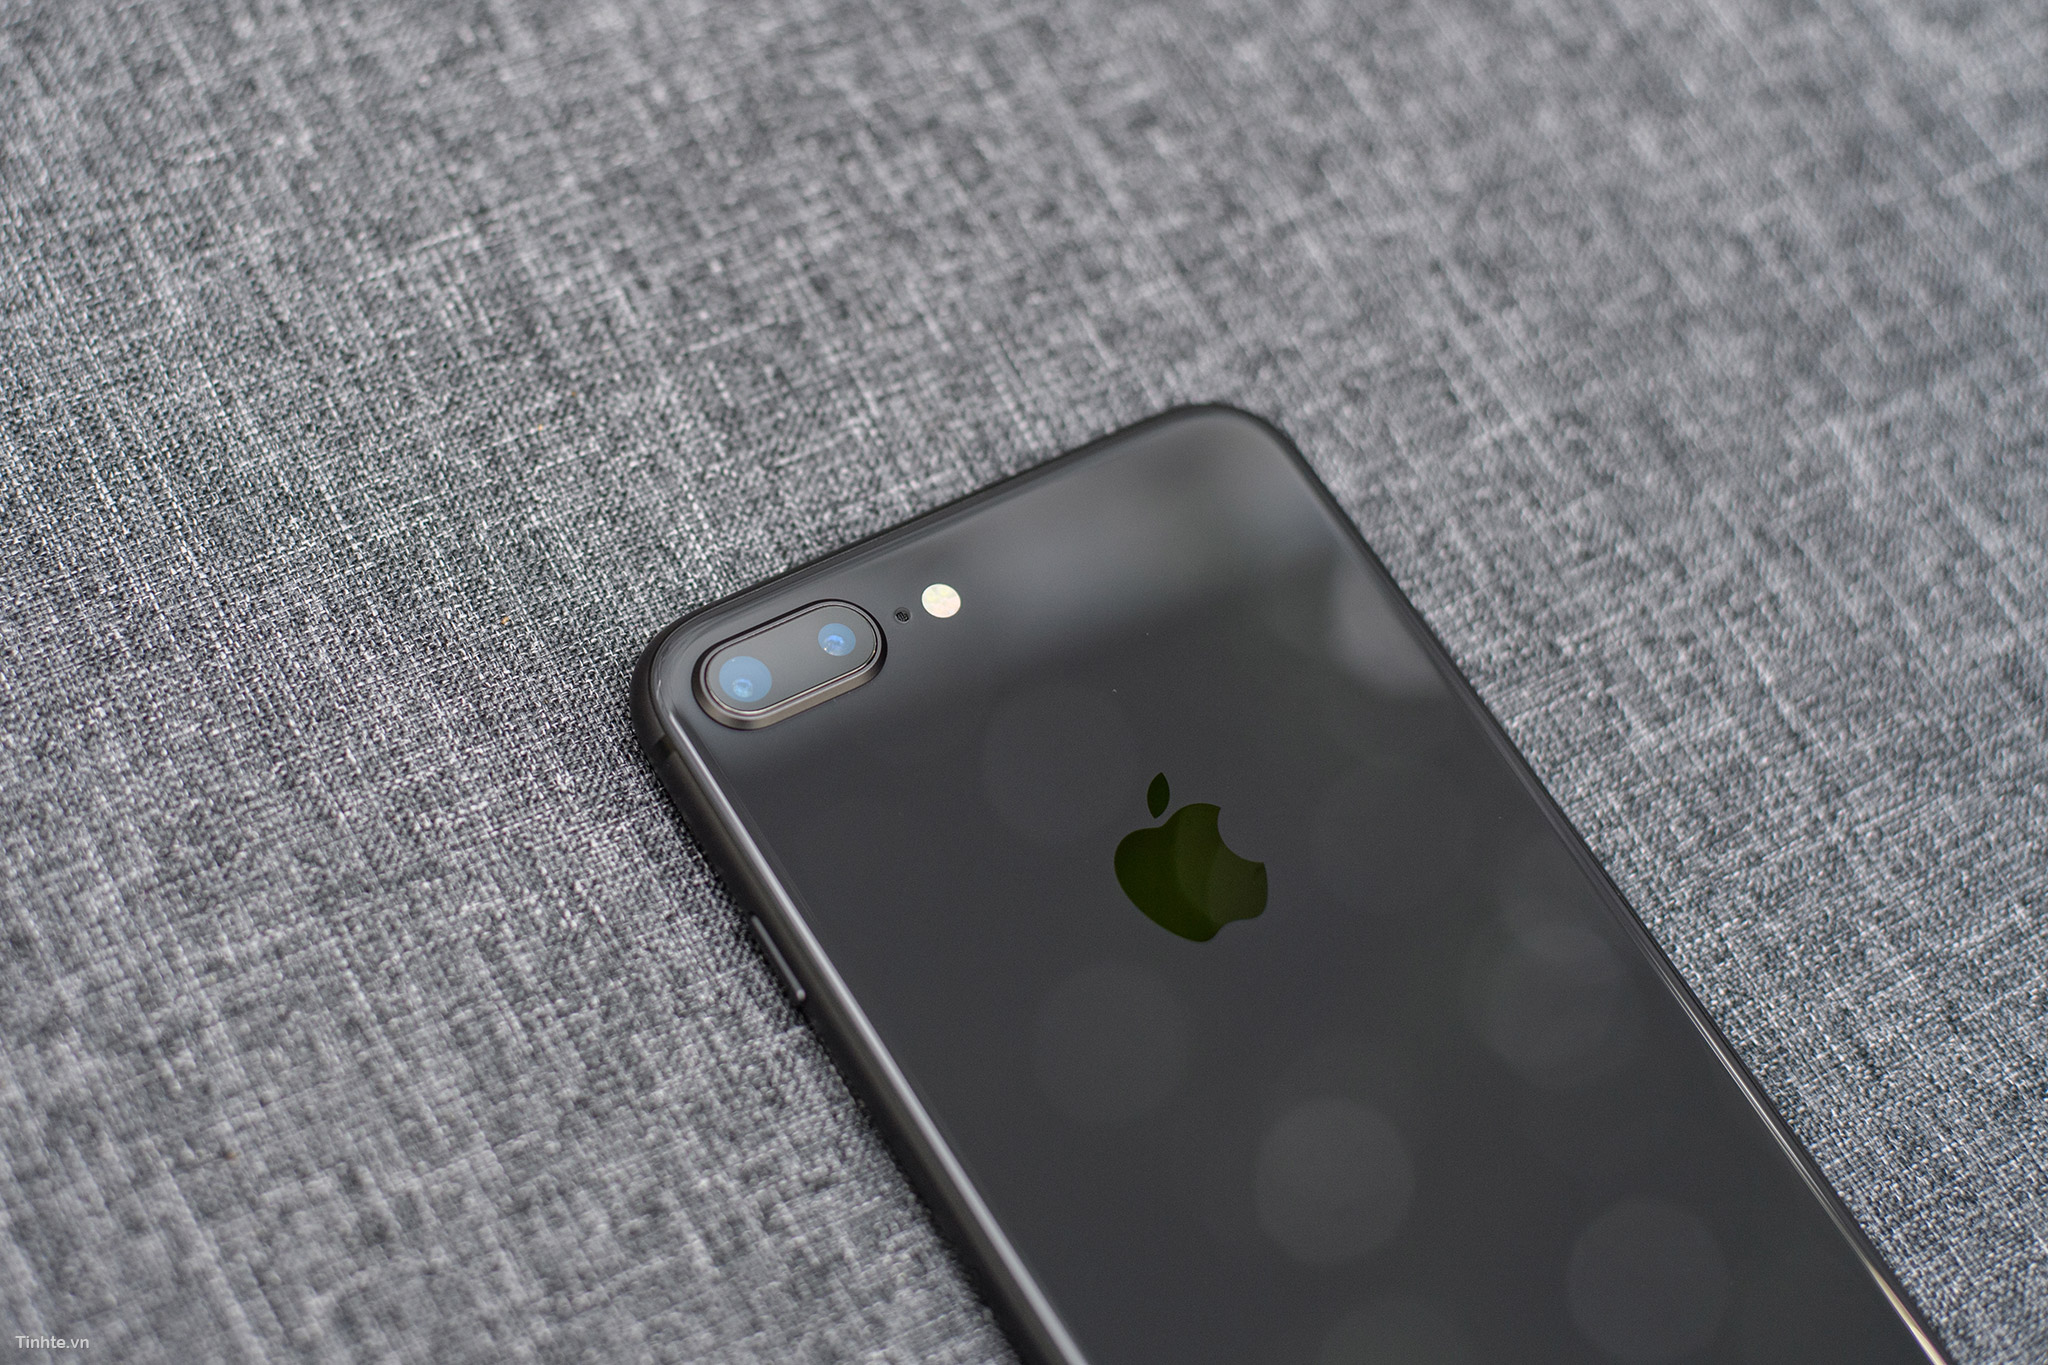 Sở hữu chiếc iPhone 8/8 Plus màu xám lông chuột không chỉ là cách để bạn nổi bật và thể hiện phong cách thời thượng mà còn là sự lựa chọn tuyệt vời cho những ai yêu thích sự đơn giản và hiện đại. Hãy cùng ngắm nhìn chiếc điện thoại này và cảm nhận sự sang trọng từ màu sắc đến thiết kế tinh tế của nó.